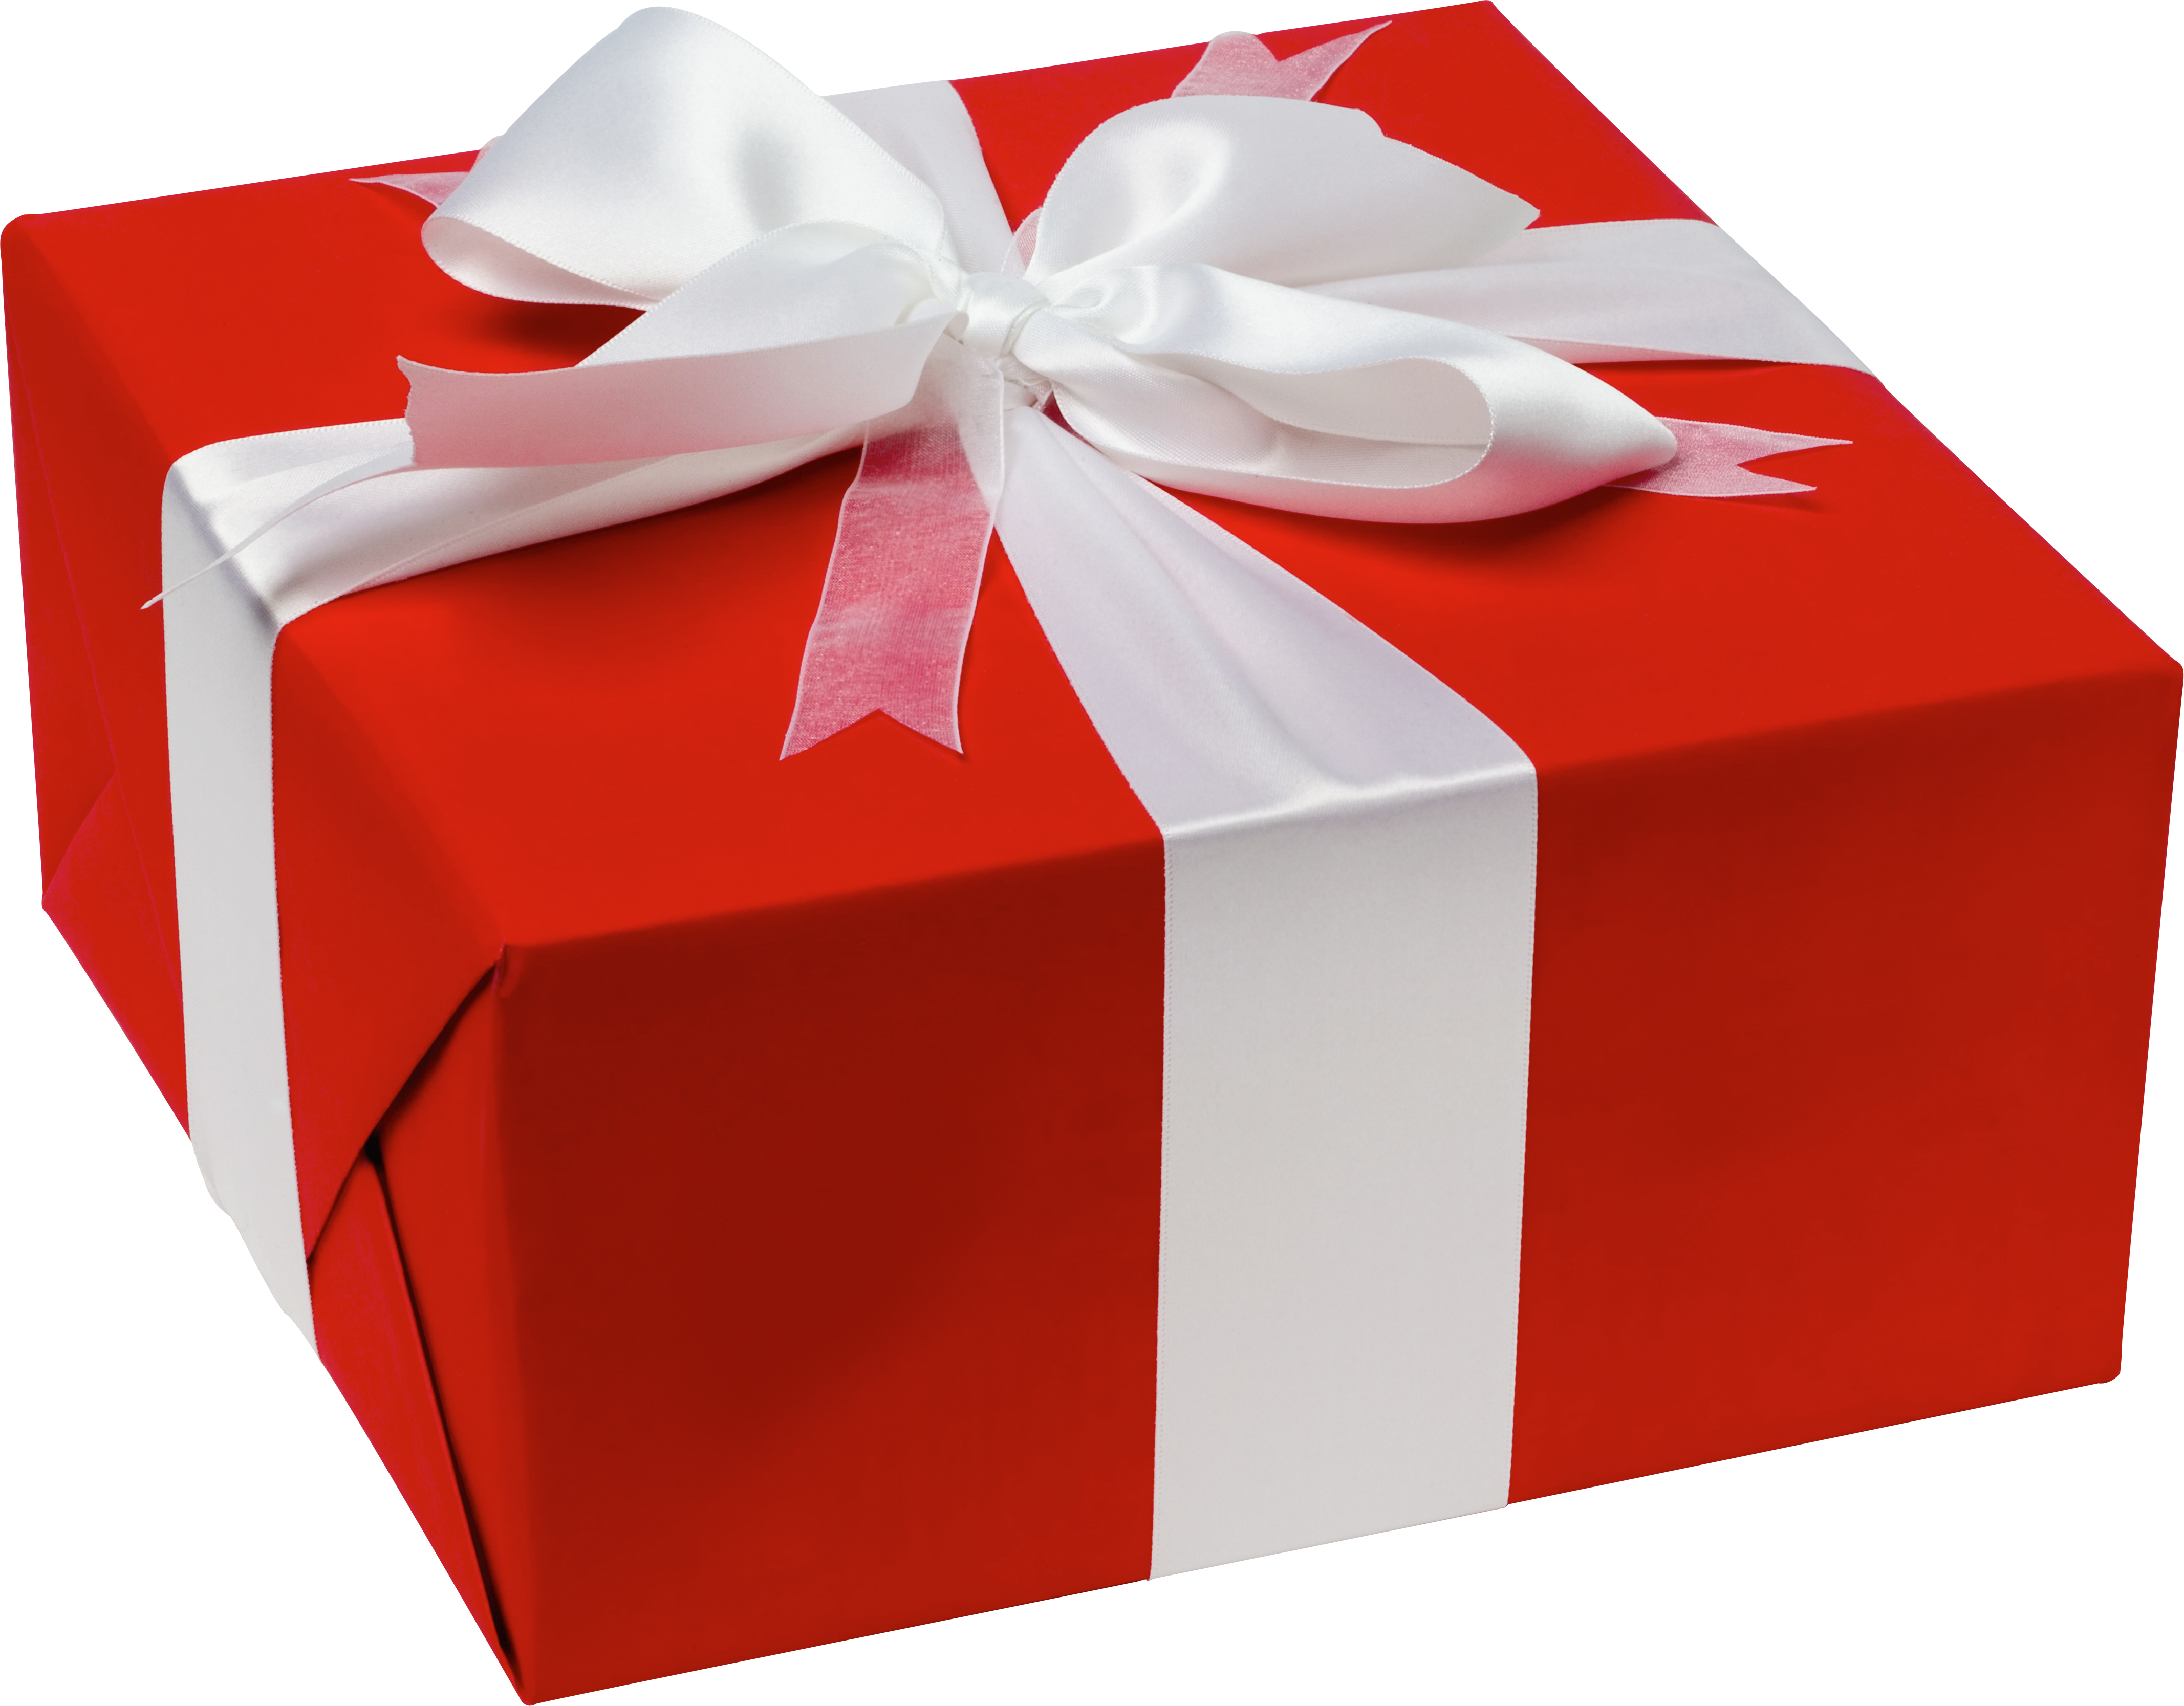 Другое название подарков. Подарок. Коробка для подарка. Коробка с красным бантом. Красная коробка подарок.